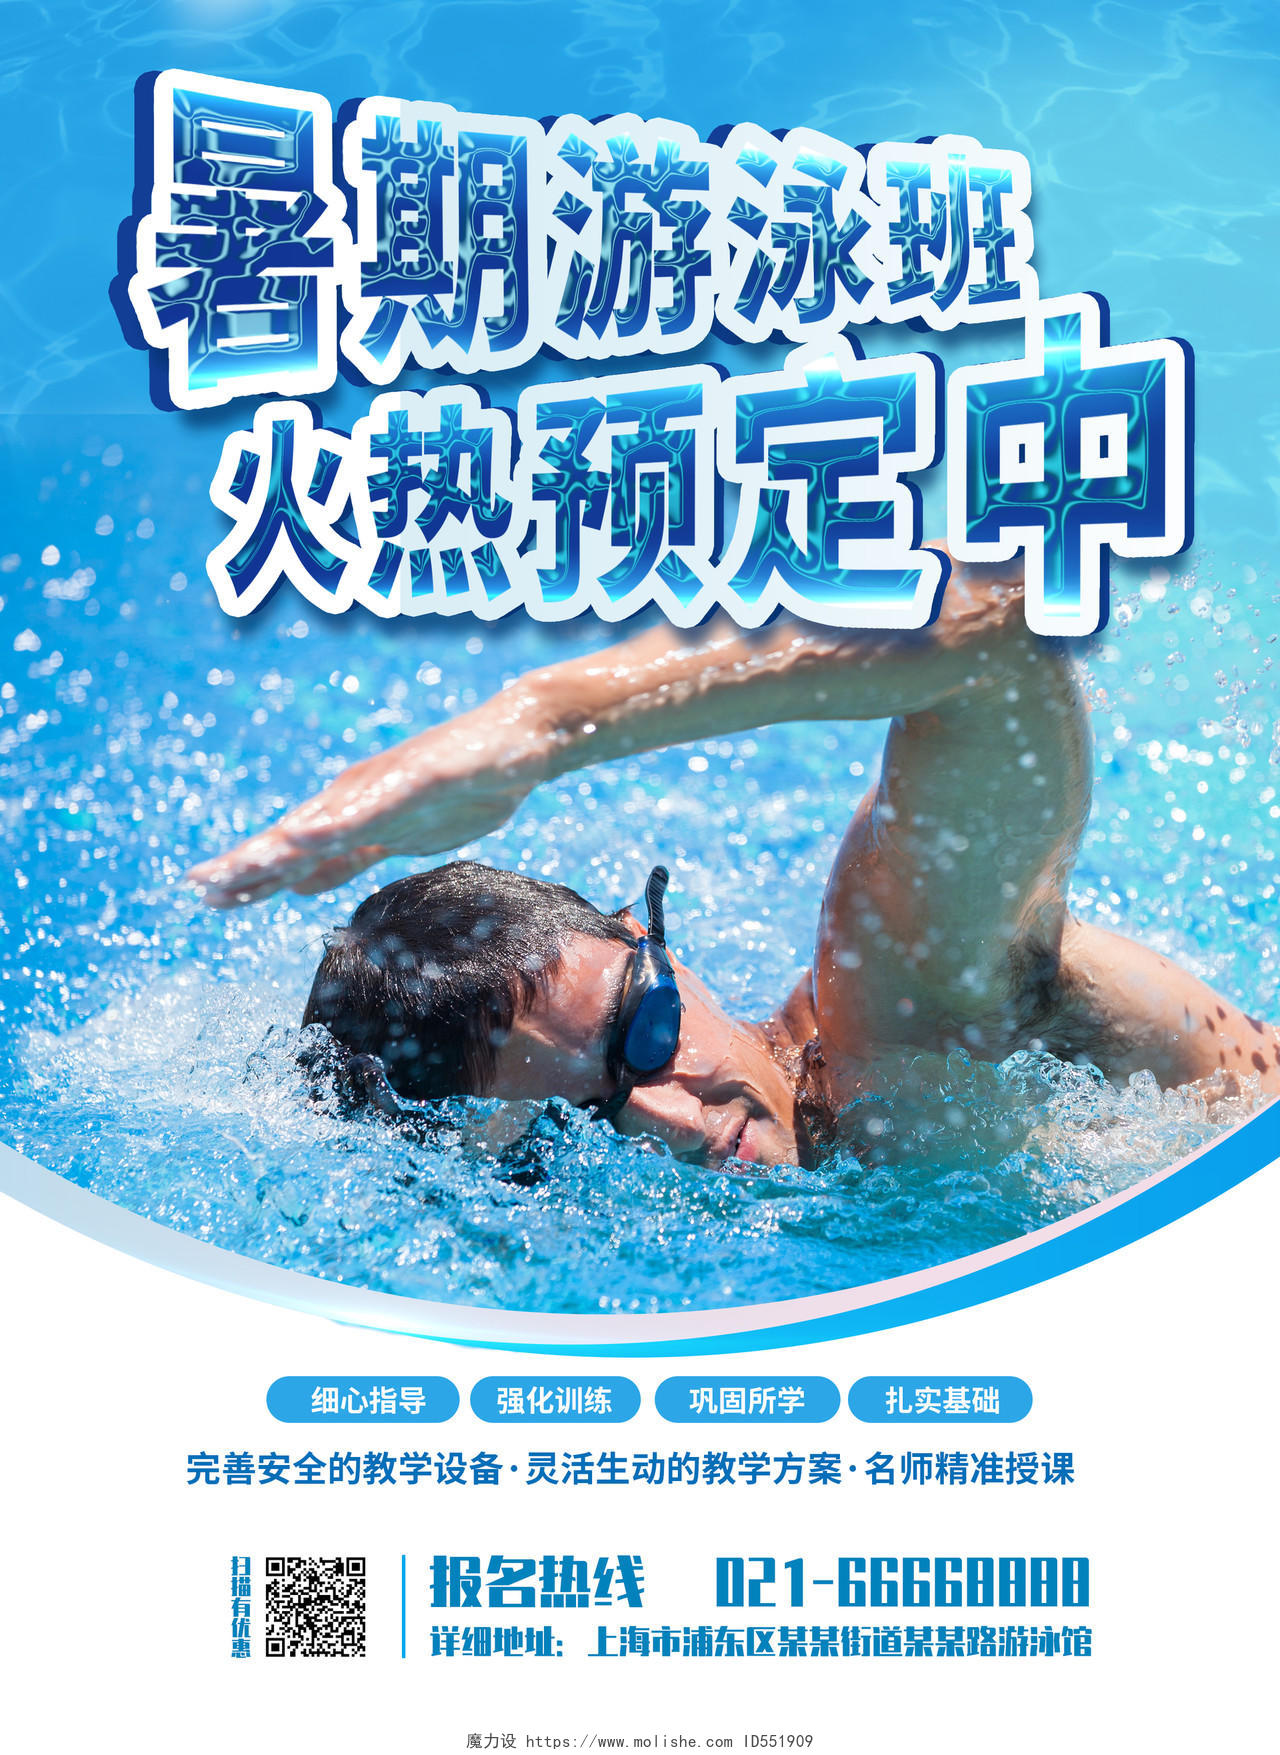 教育蓝色游泳培训宣传单暑期培训活动招生宣传彩页